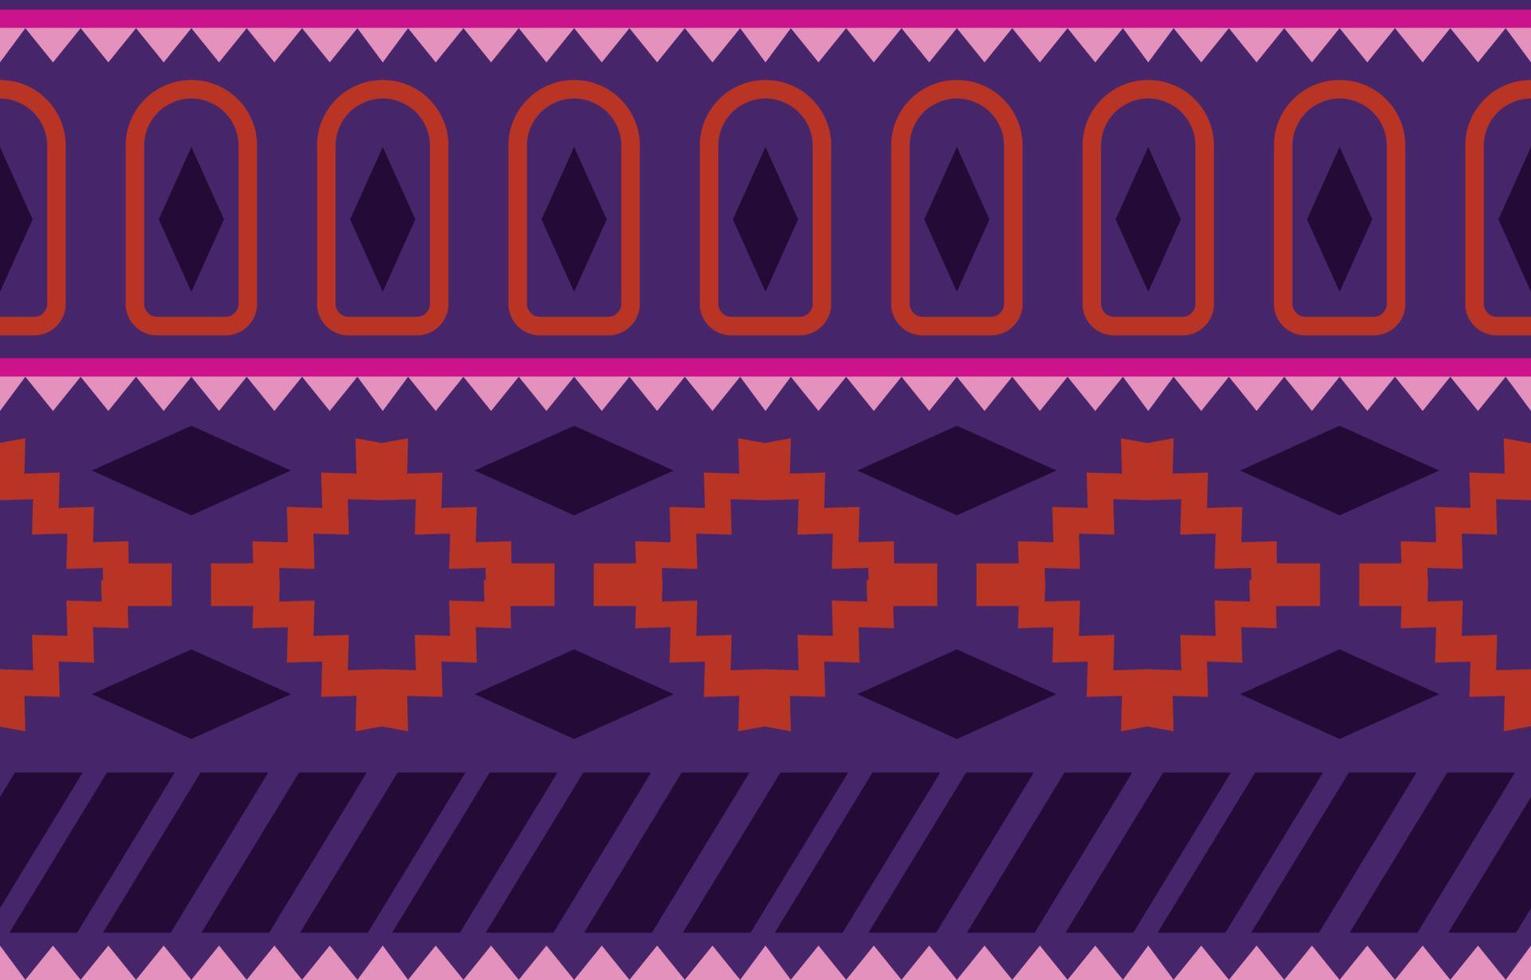 patrón étnico tribal oriental geométrico africano. fondo tradicional. diseño para moqueta, papel pintado, ropa, envoltura, batik, tela, estilo de bordado de ilustración vectorial. vector